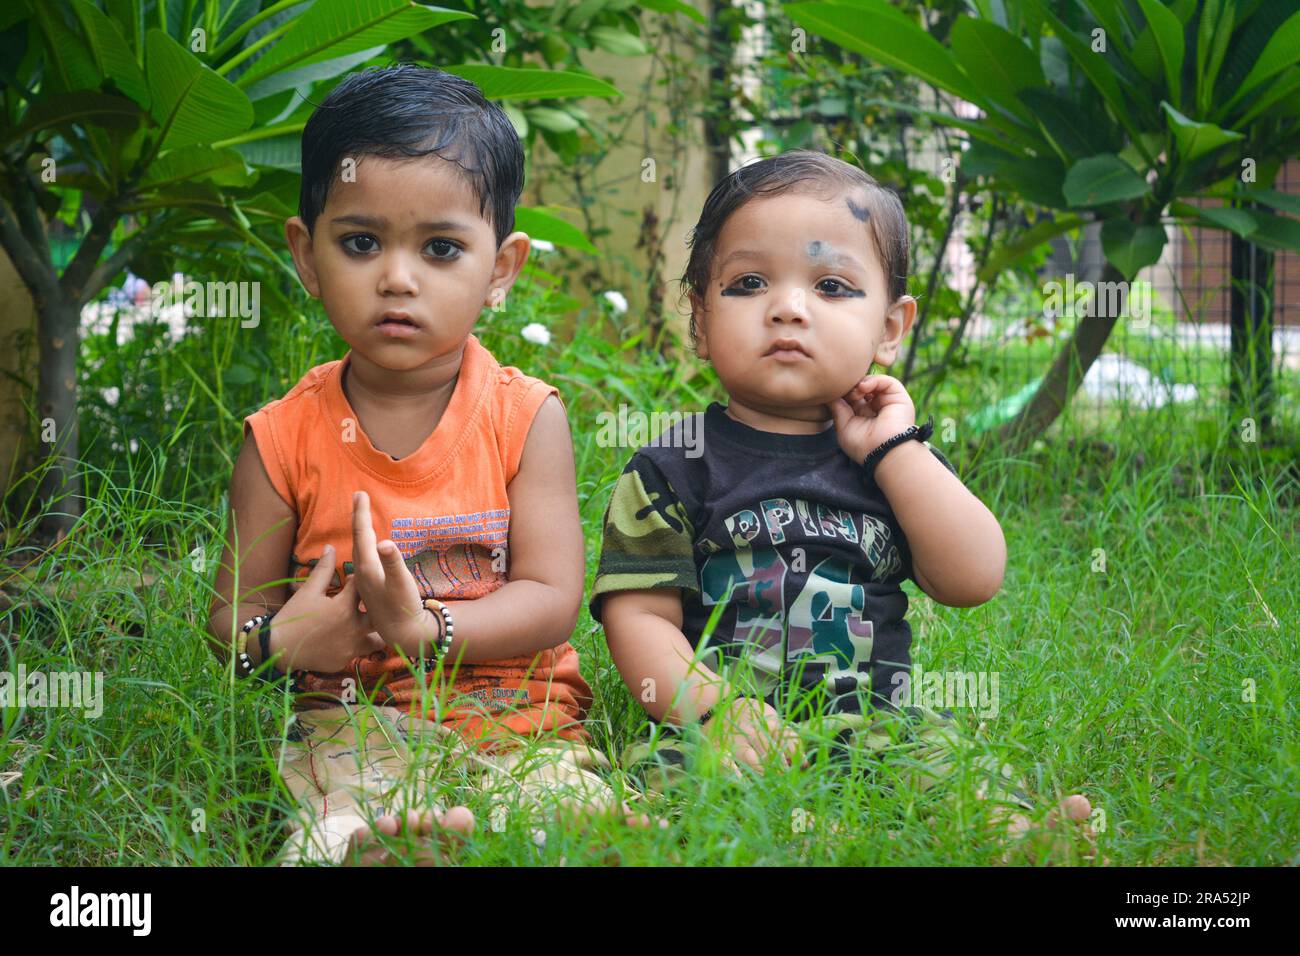 TIKAMGARH, MADHYA PRADESH, INDIA - AUGUST 13, 2022: Boy and girl playing in park. Stock Photo